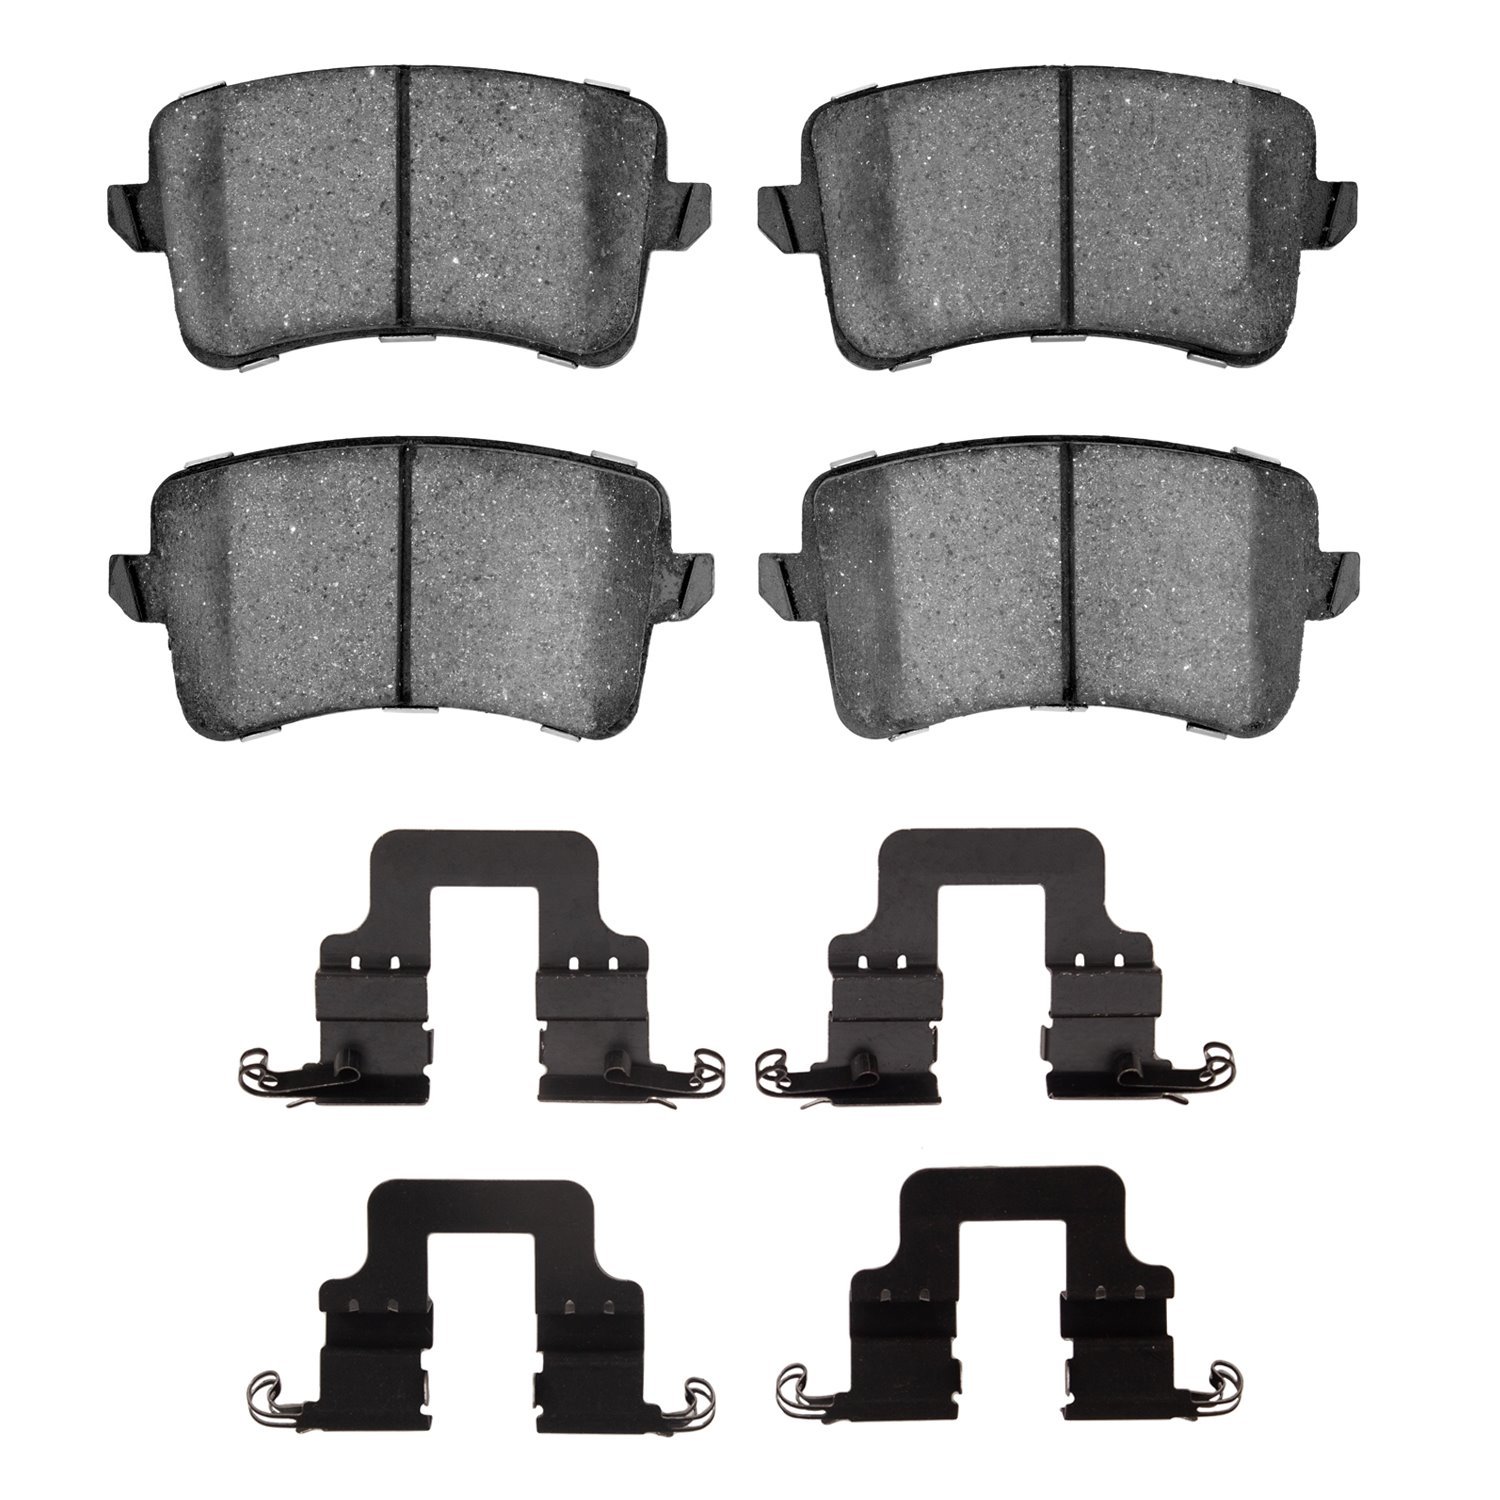 1311-1386-01 3000-Series Semi-Metallic Brake Pads & Hardware Kit, 2008-2017 Audi/Volkswagen, Position: Rear